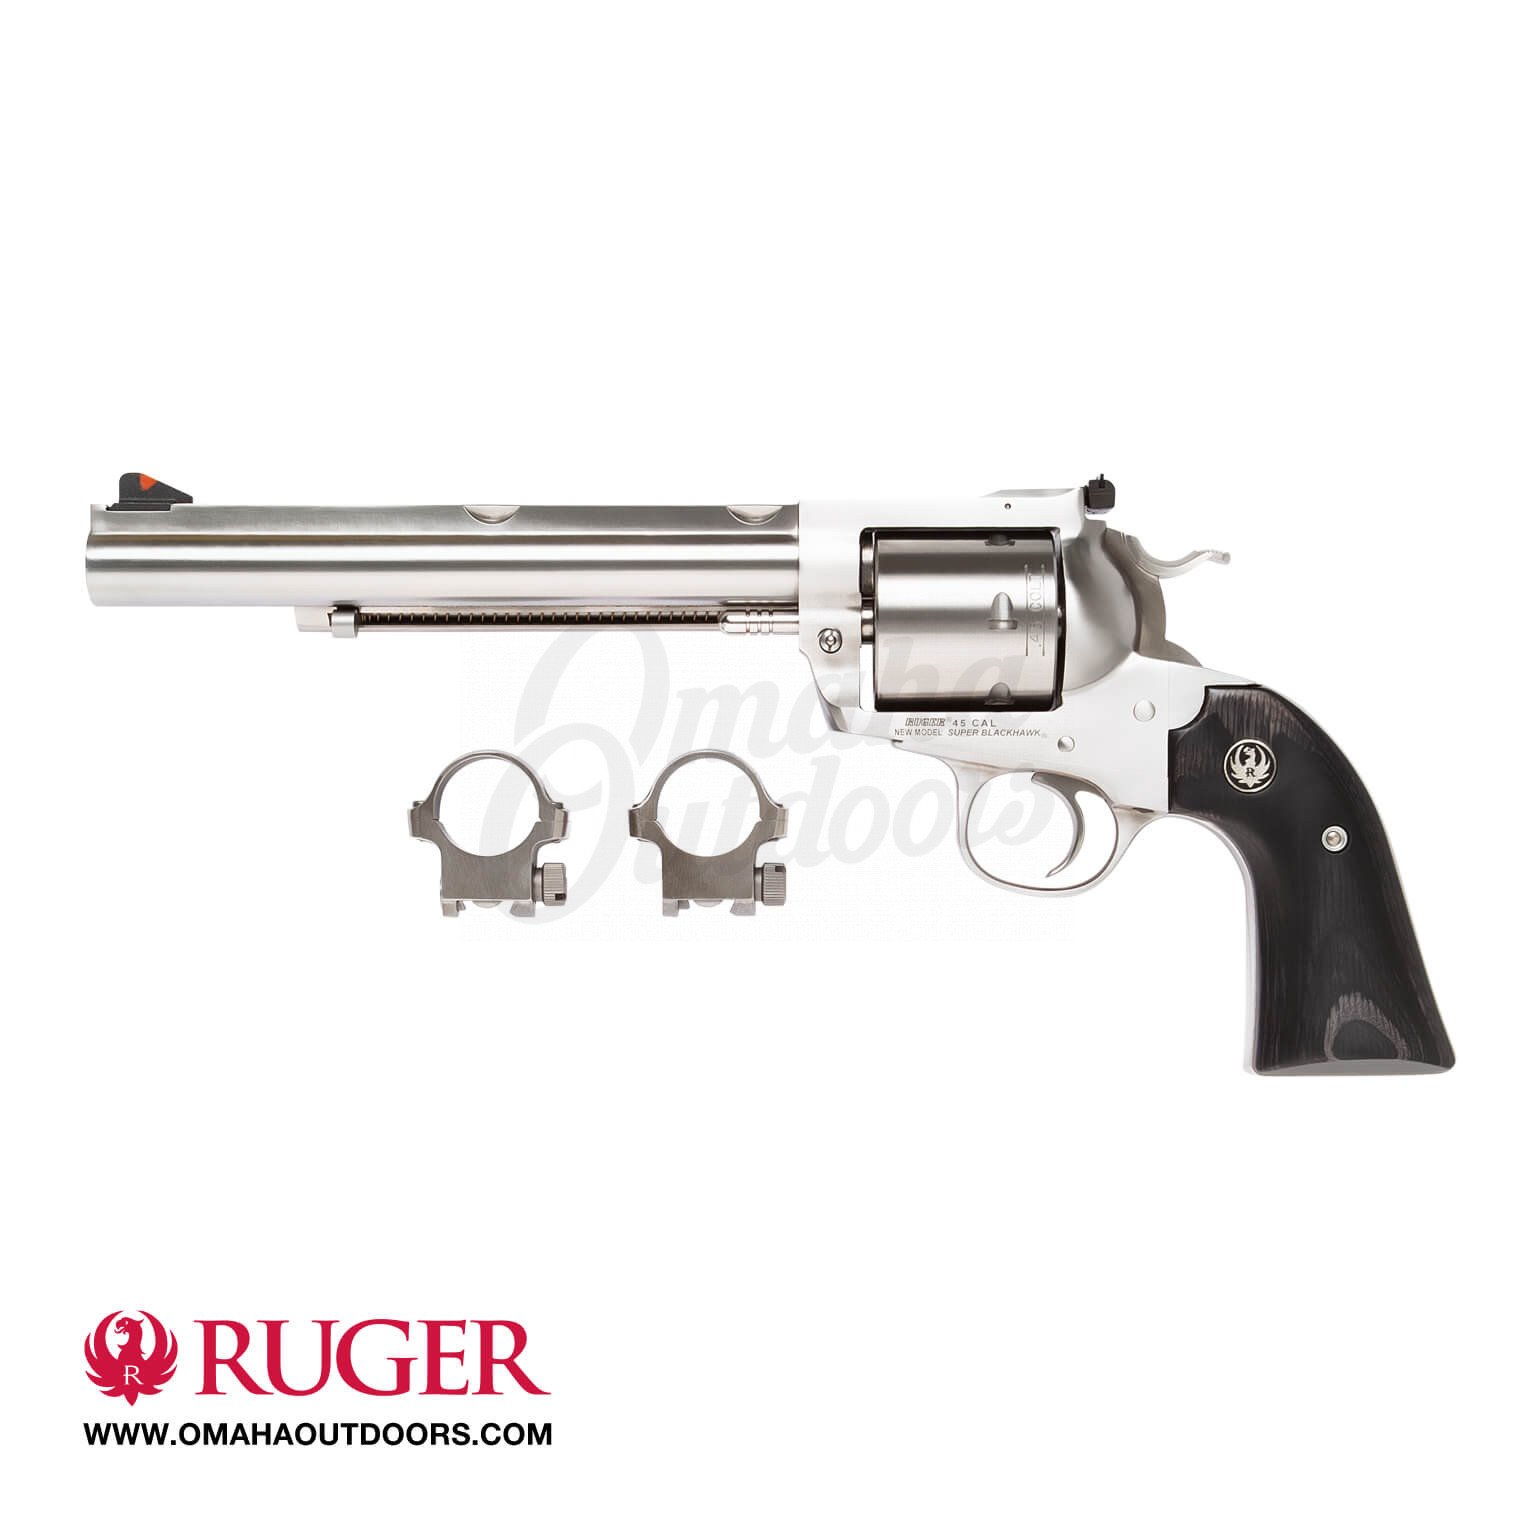 Ruger Super Blackhawk Bisley Hunter 45 Colt Revolver 7 5 Pistol 0866